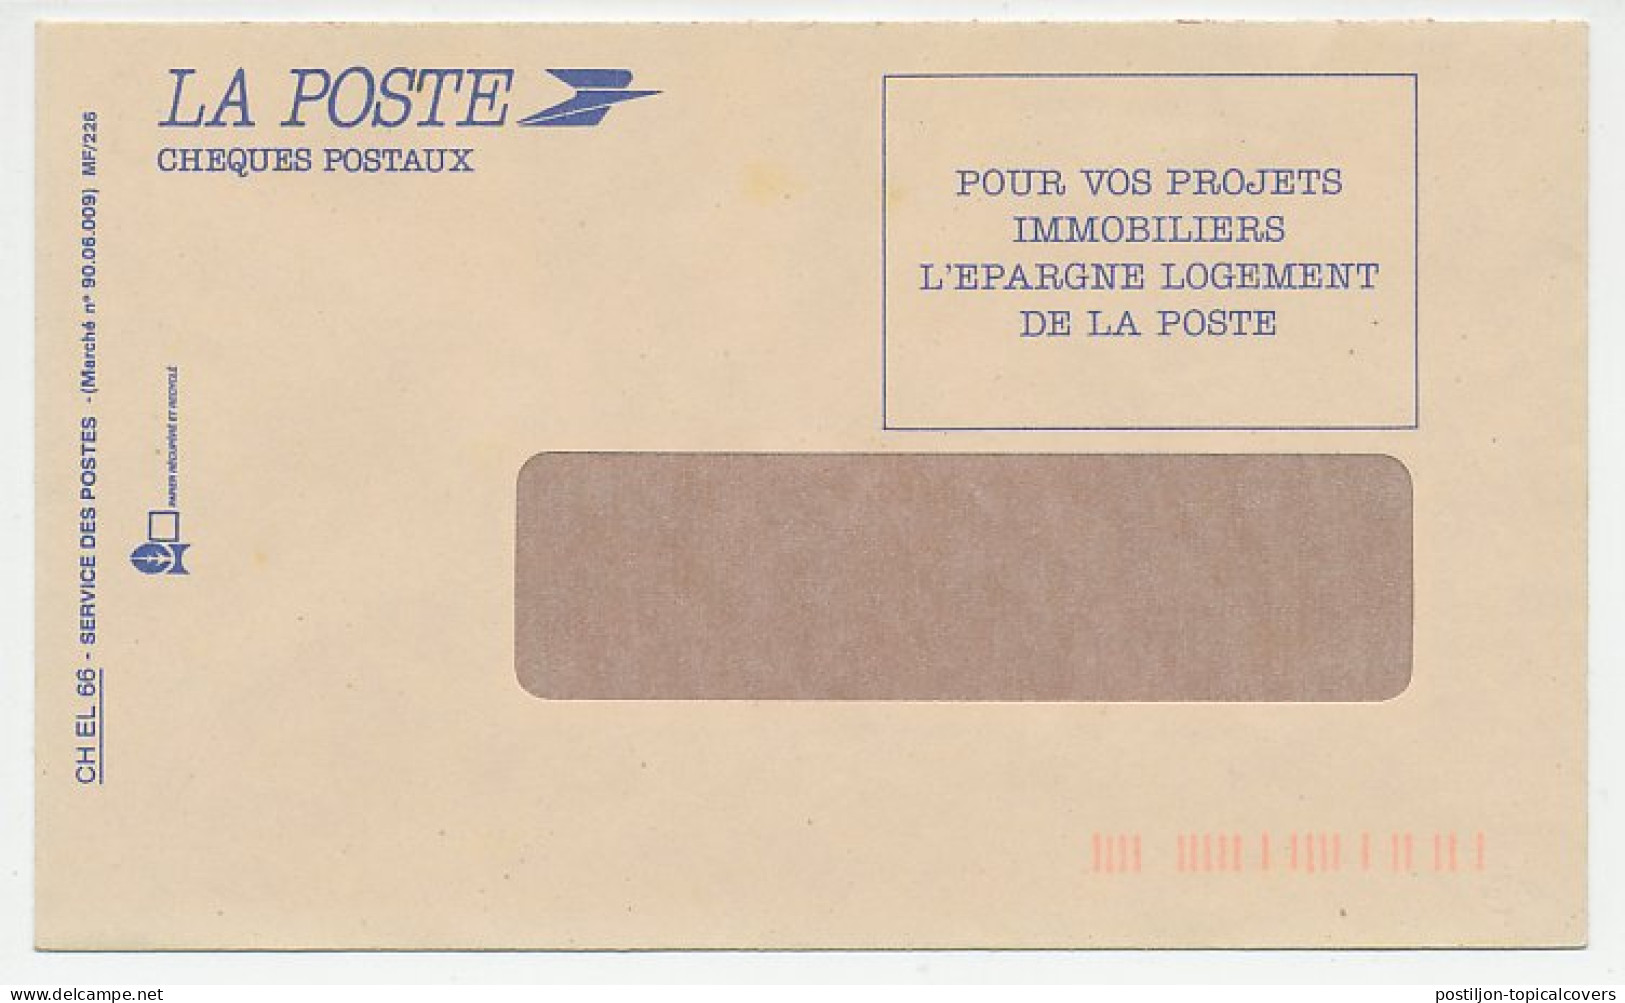 Postal Cheque Cover France 1990 Humidity - Mold - Isolation - Non Classificati